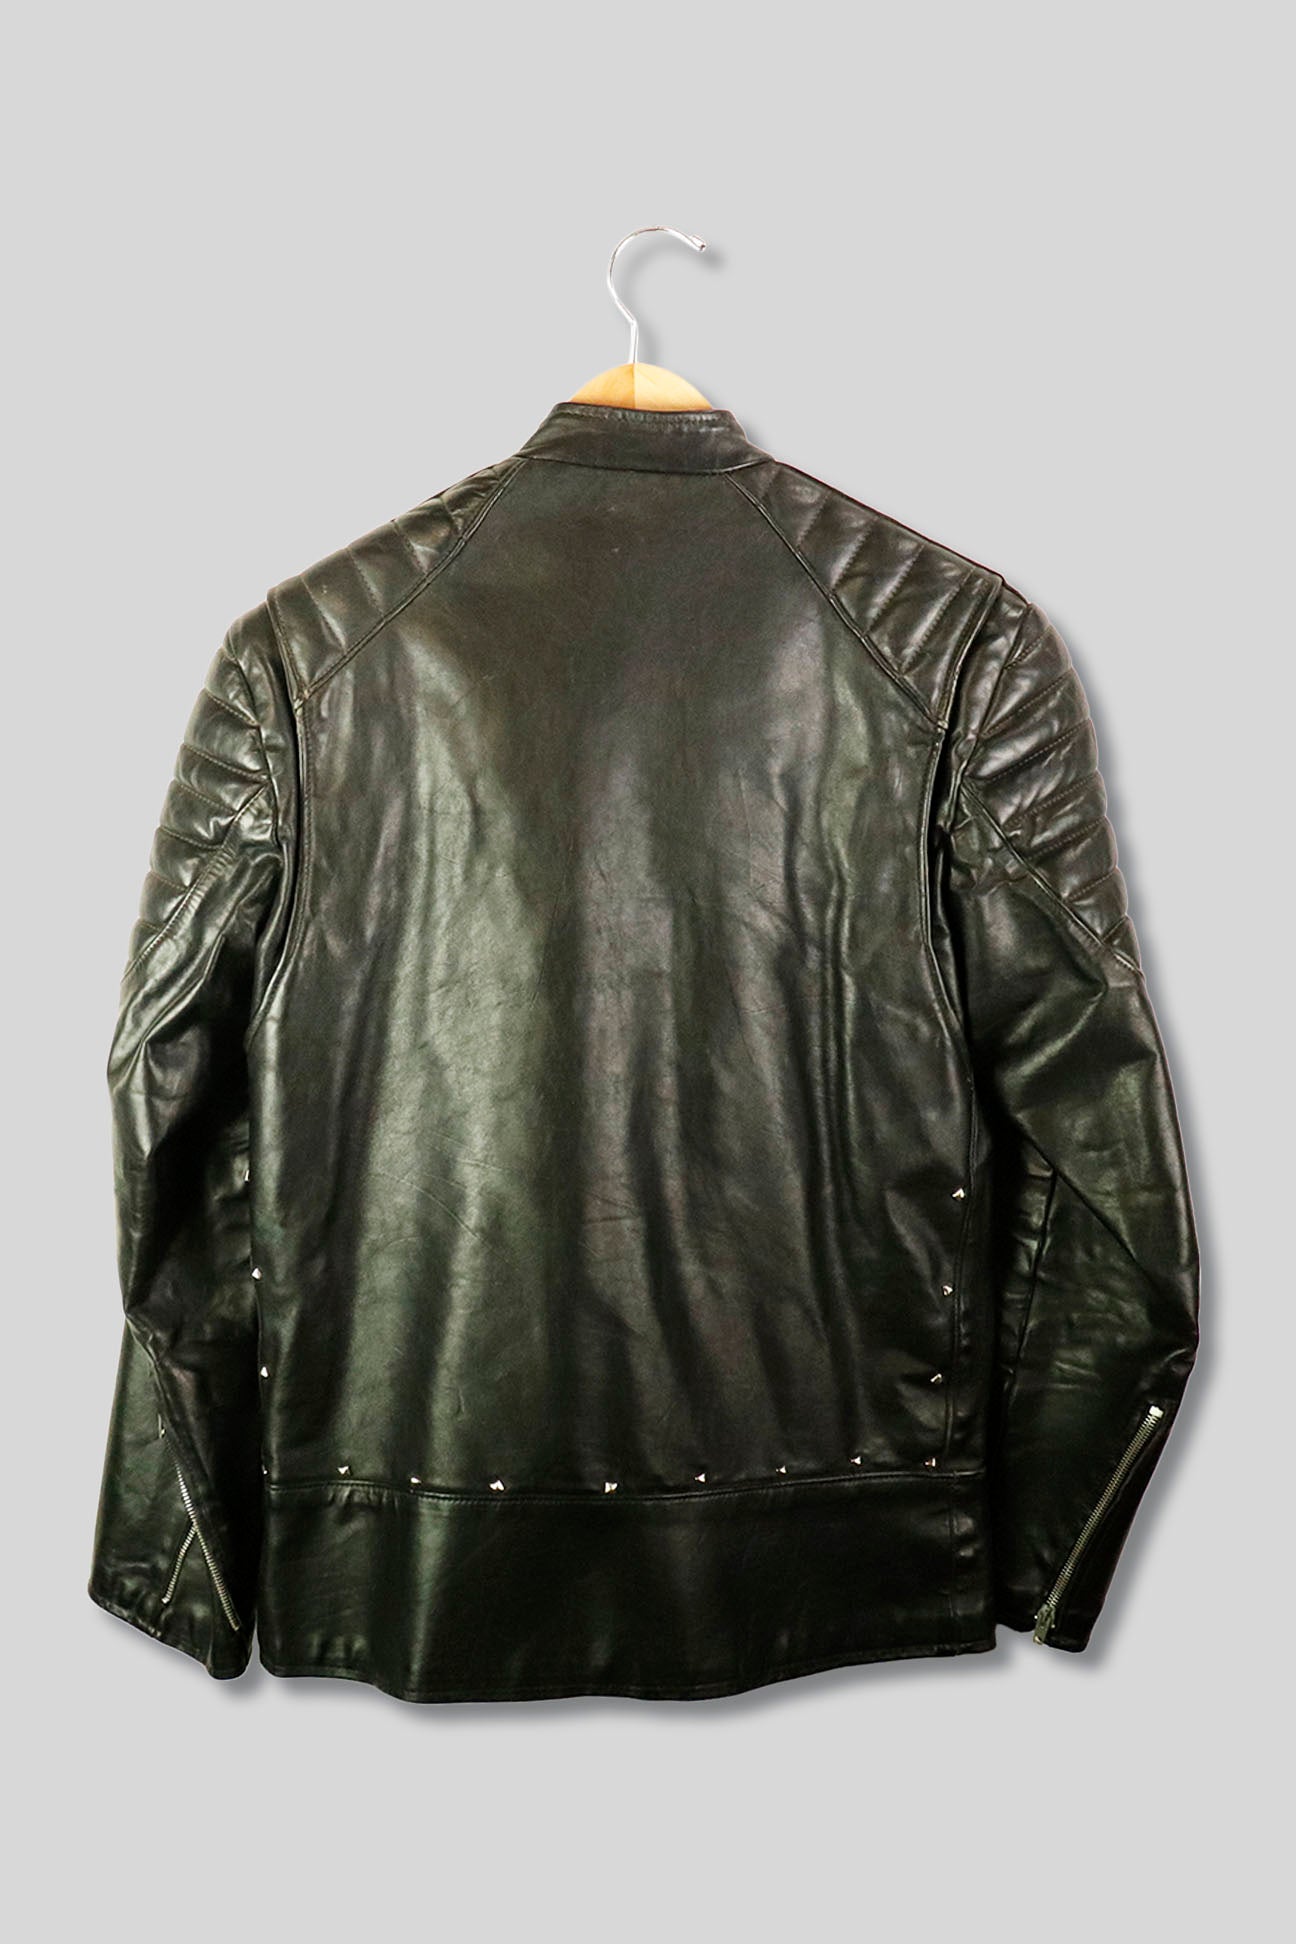 Vintage Brimaco Zip up Leather Motorcycle Jacket – F As In Frank